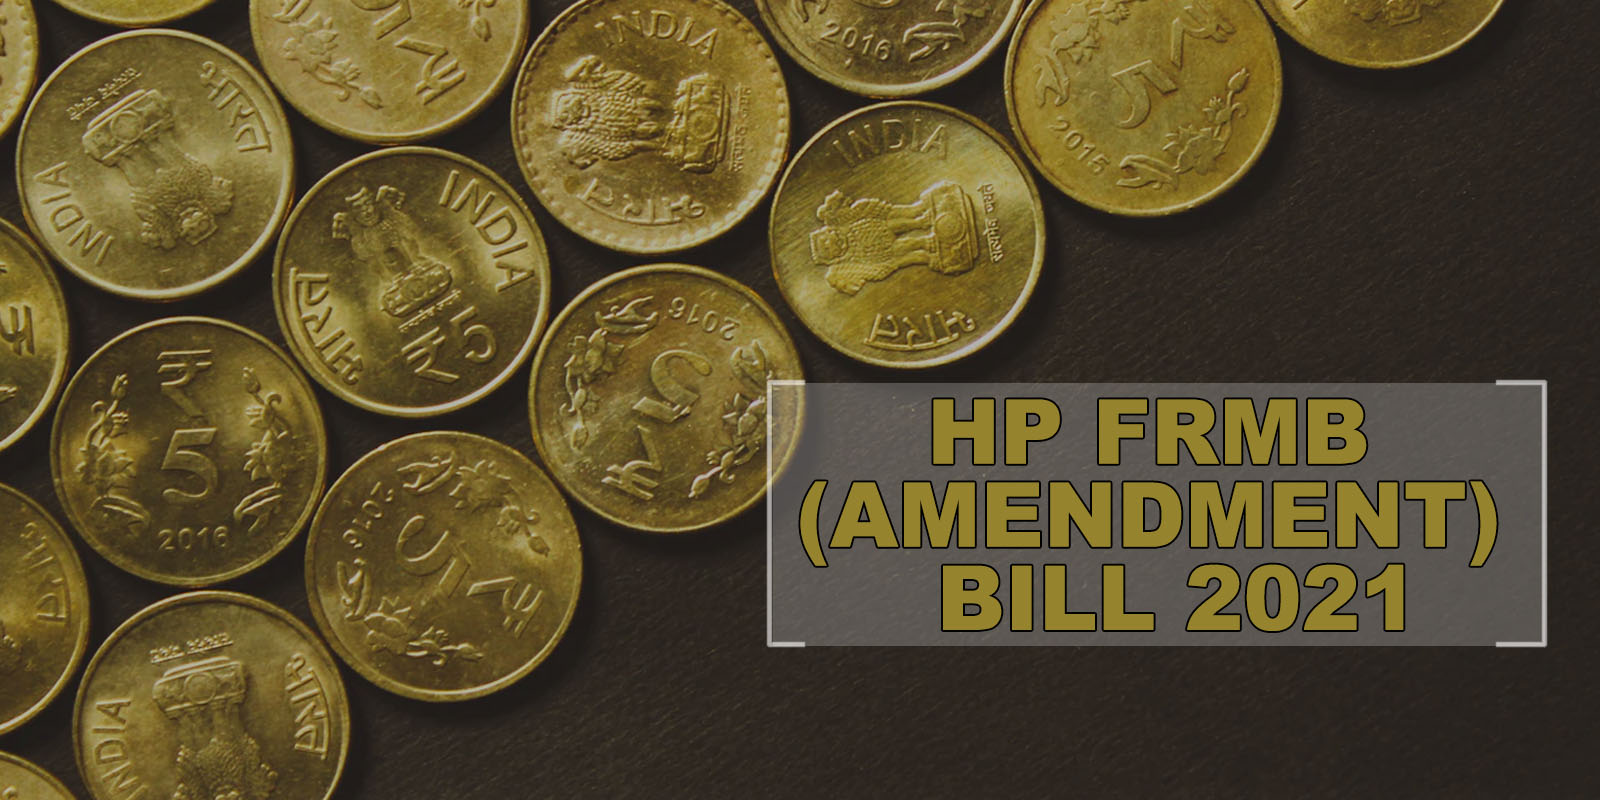 HP FRMB (Amendment) 2021 Bill